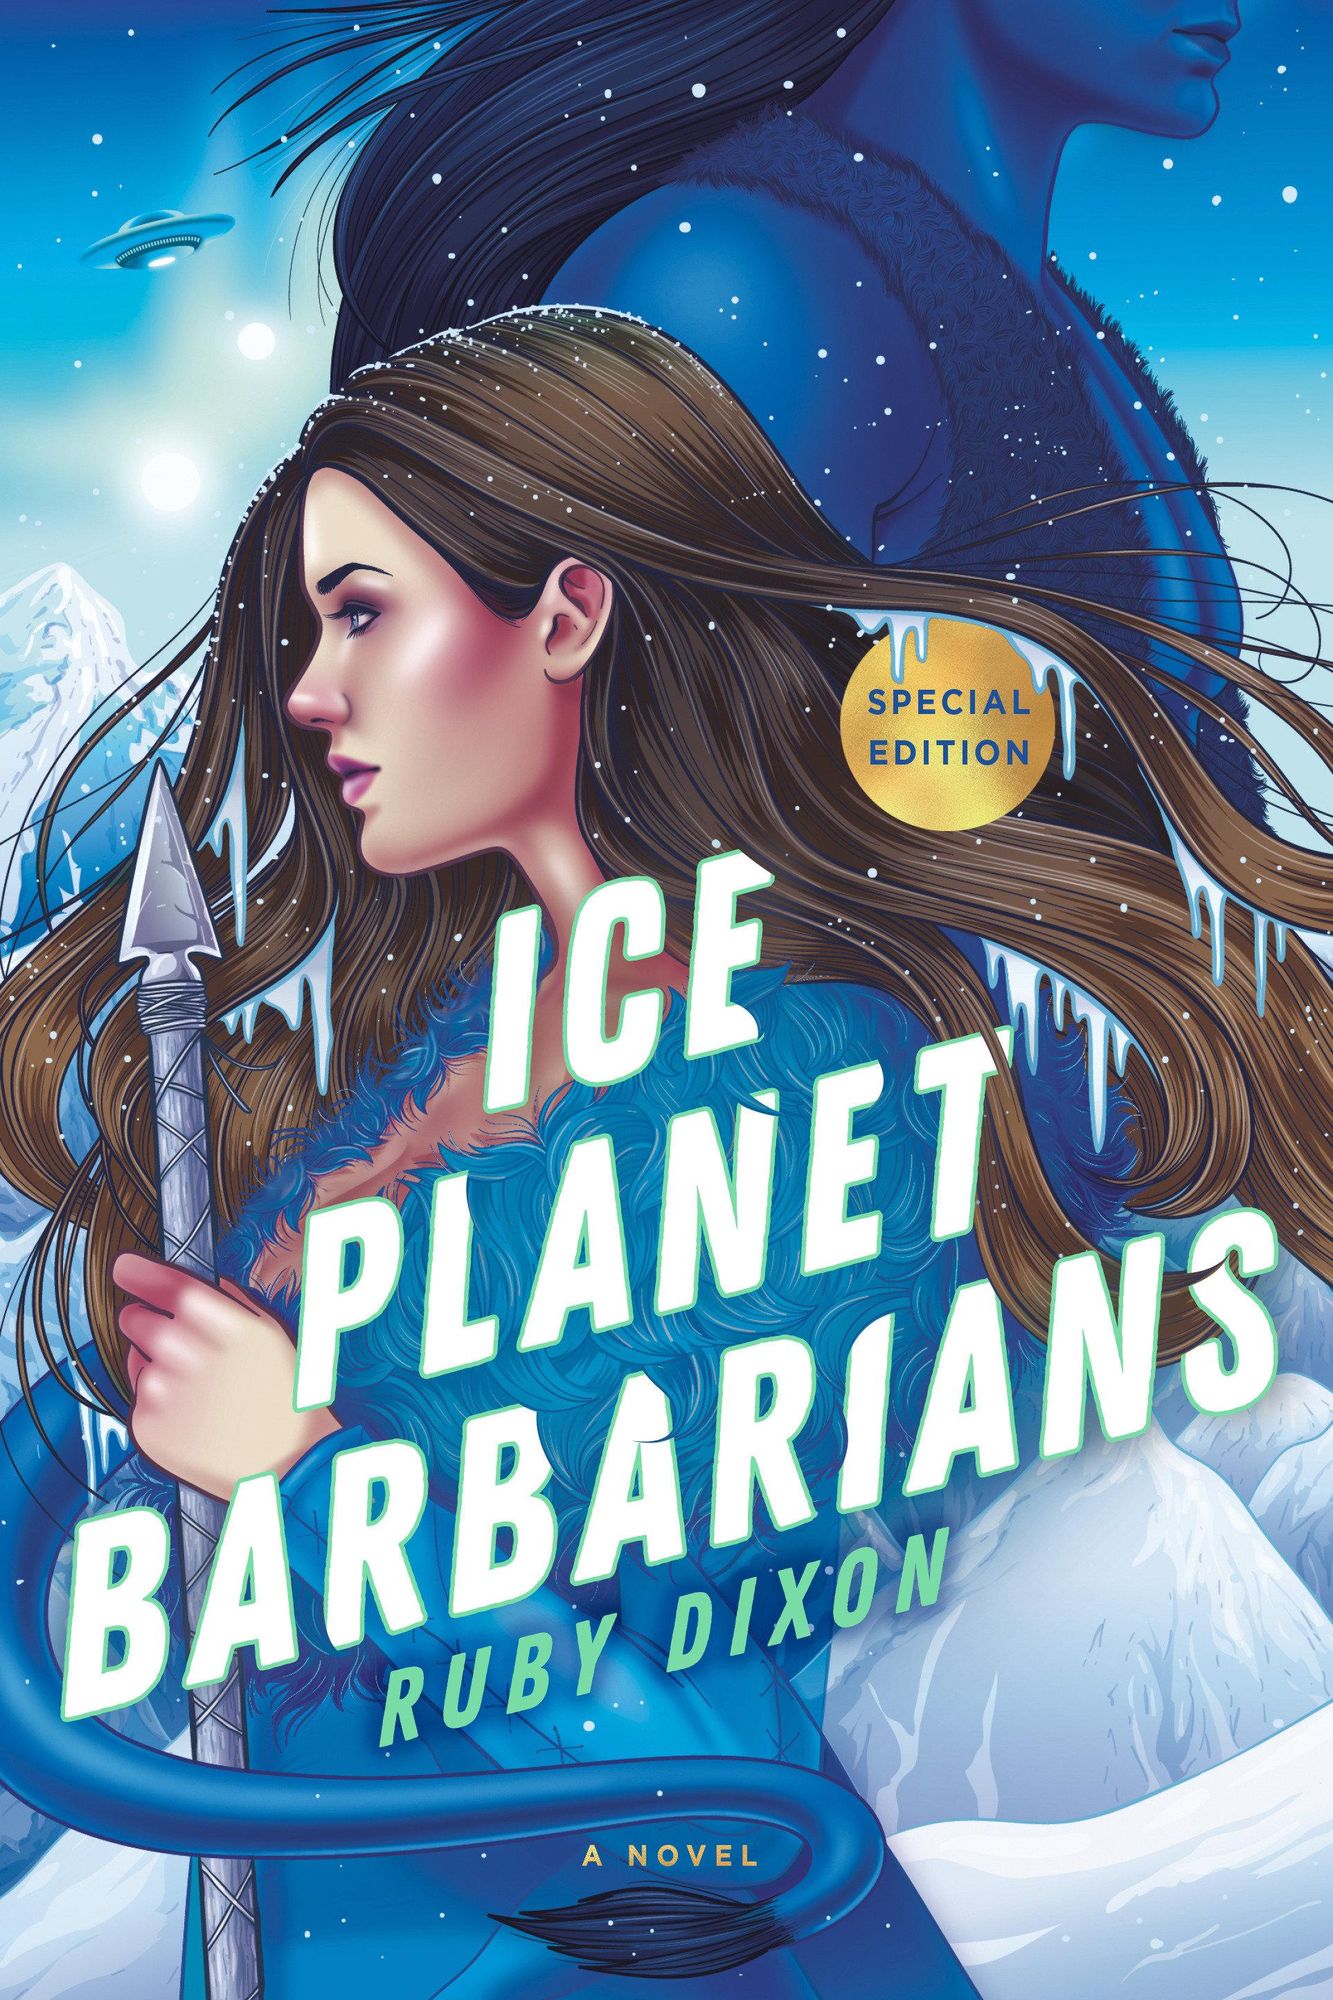 Ice　'Ruby　von　'Taschenbuch'　Planet　'978-0-593-54602-4'　Barbarians'　Dixon'